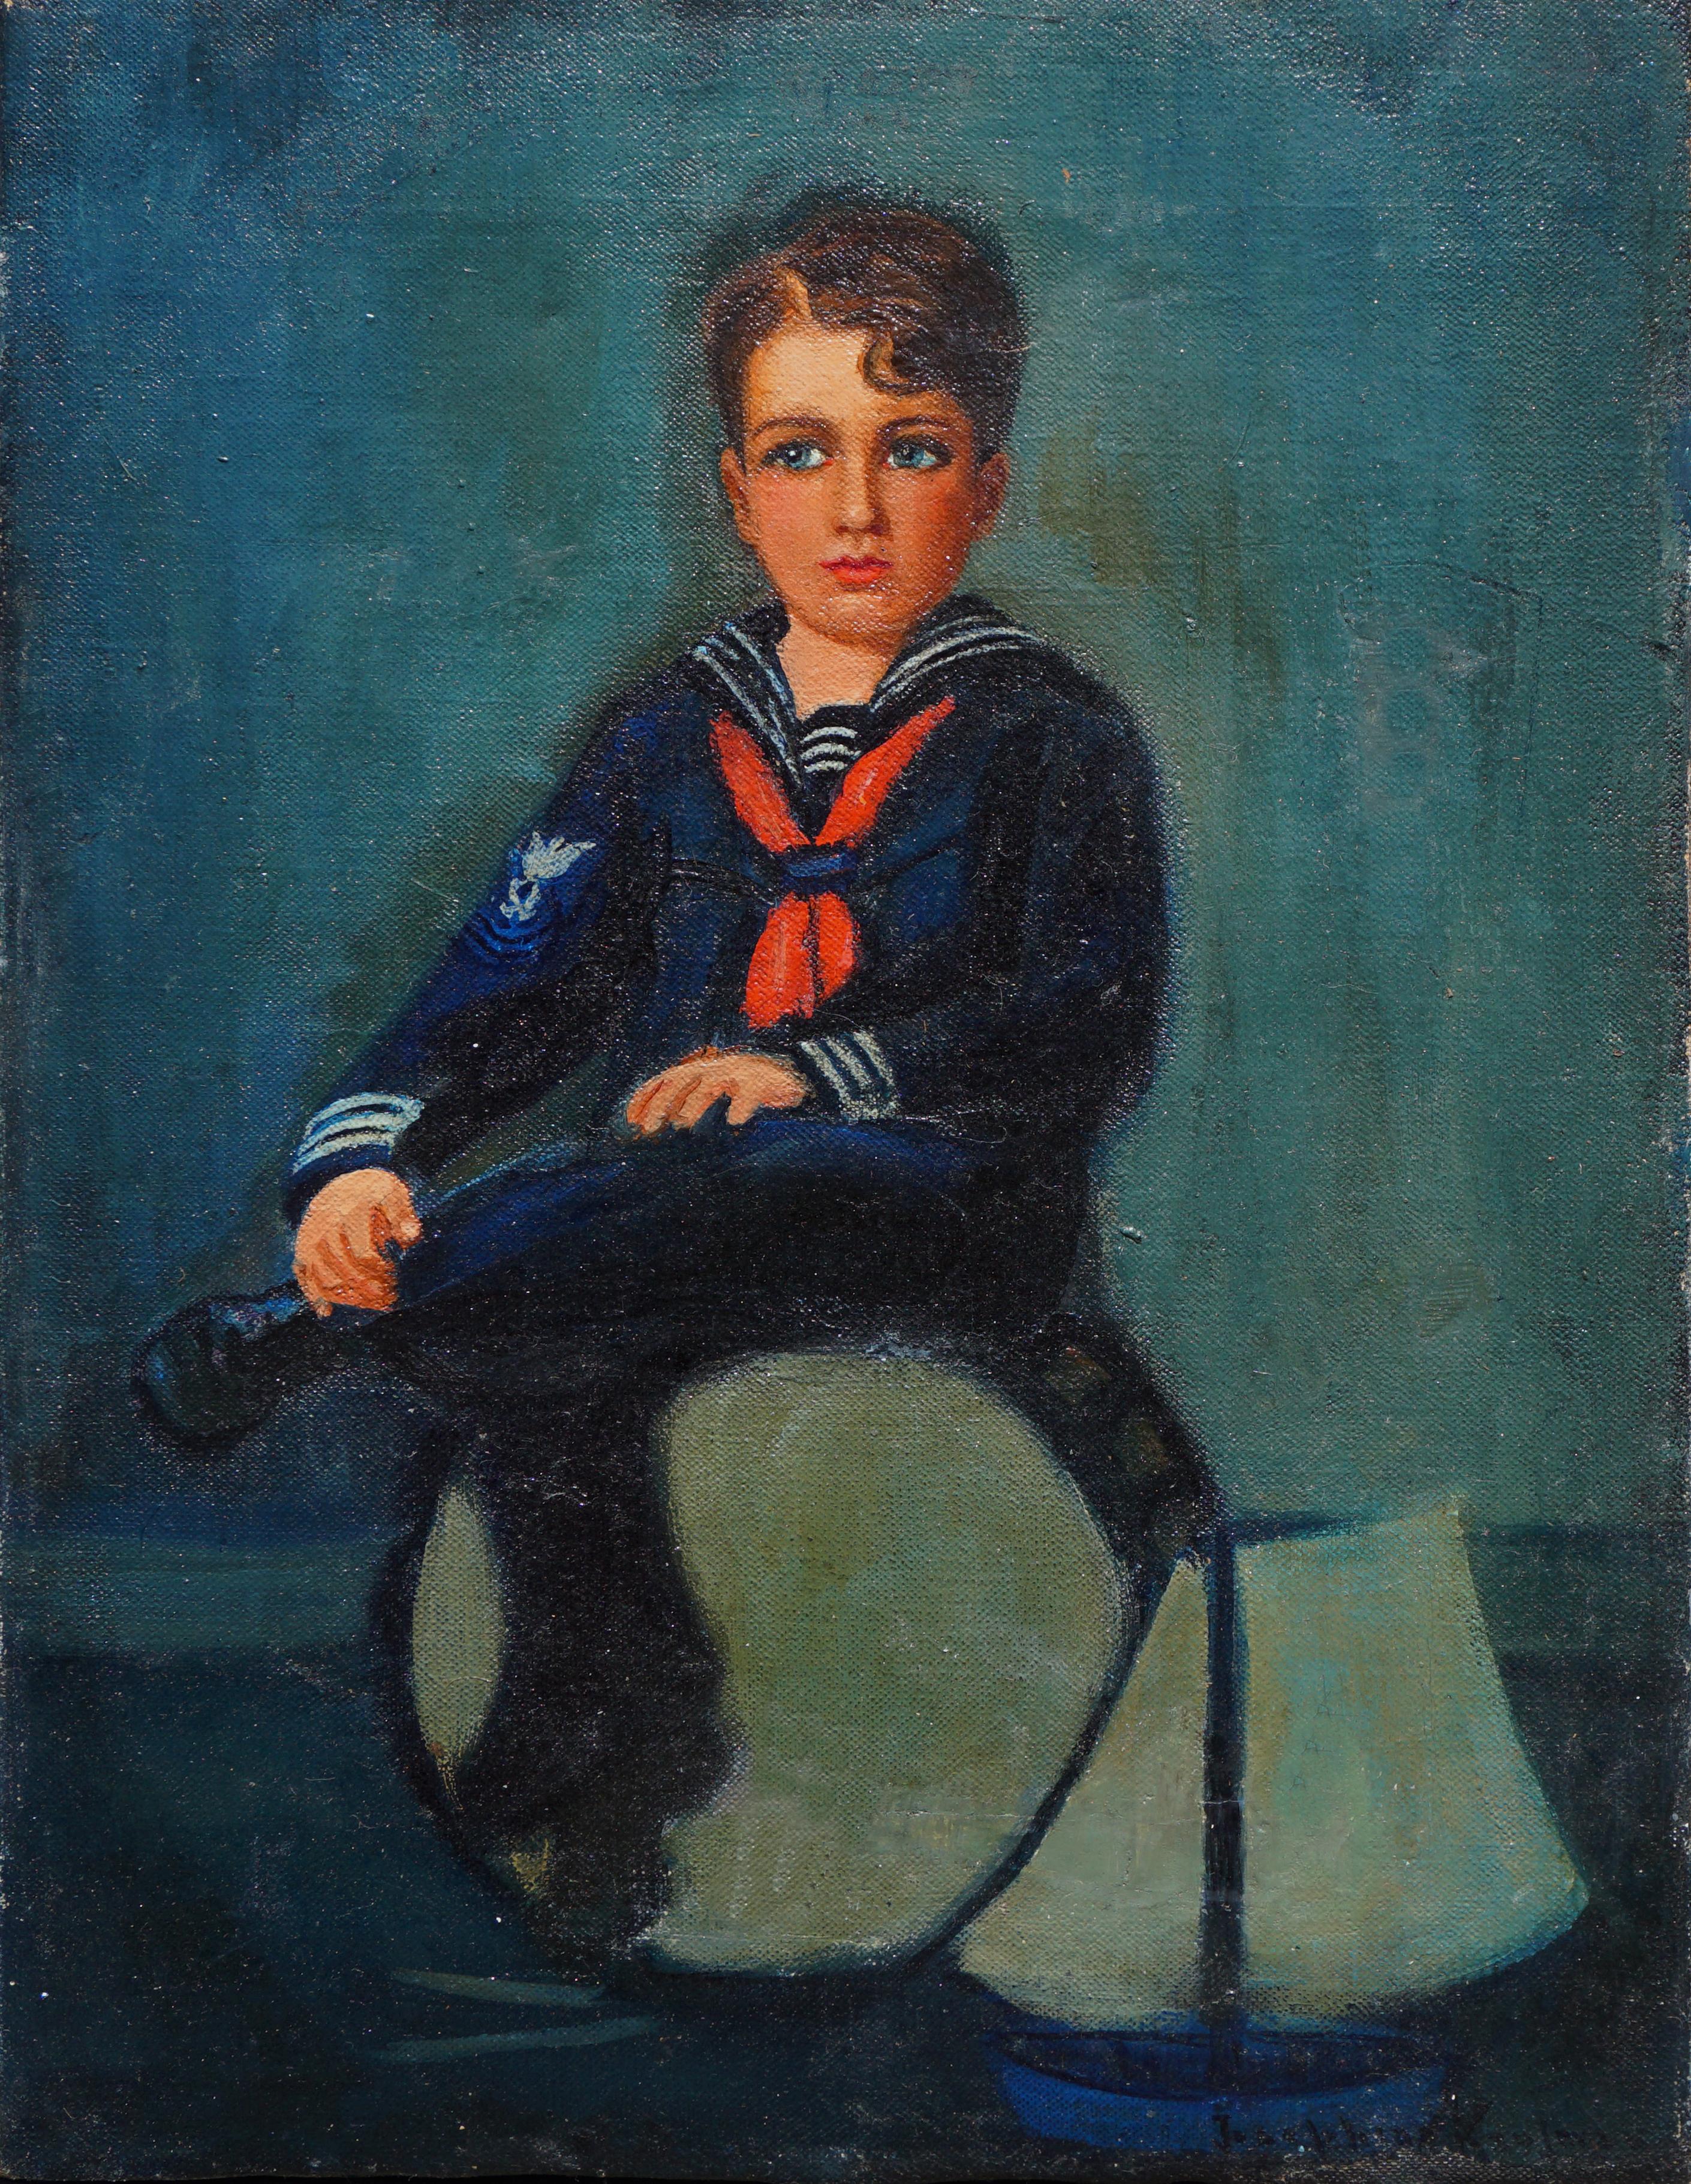 Portrait de garçon marin de la fin du XIXe siècle